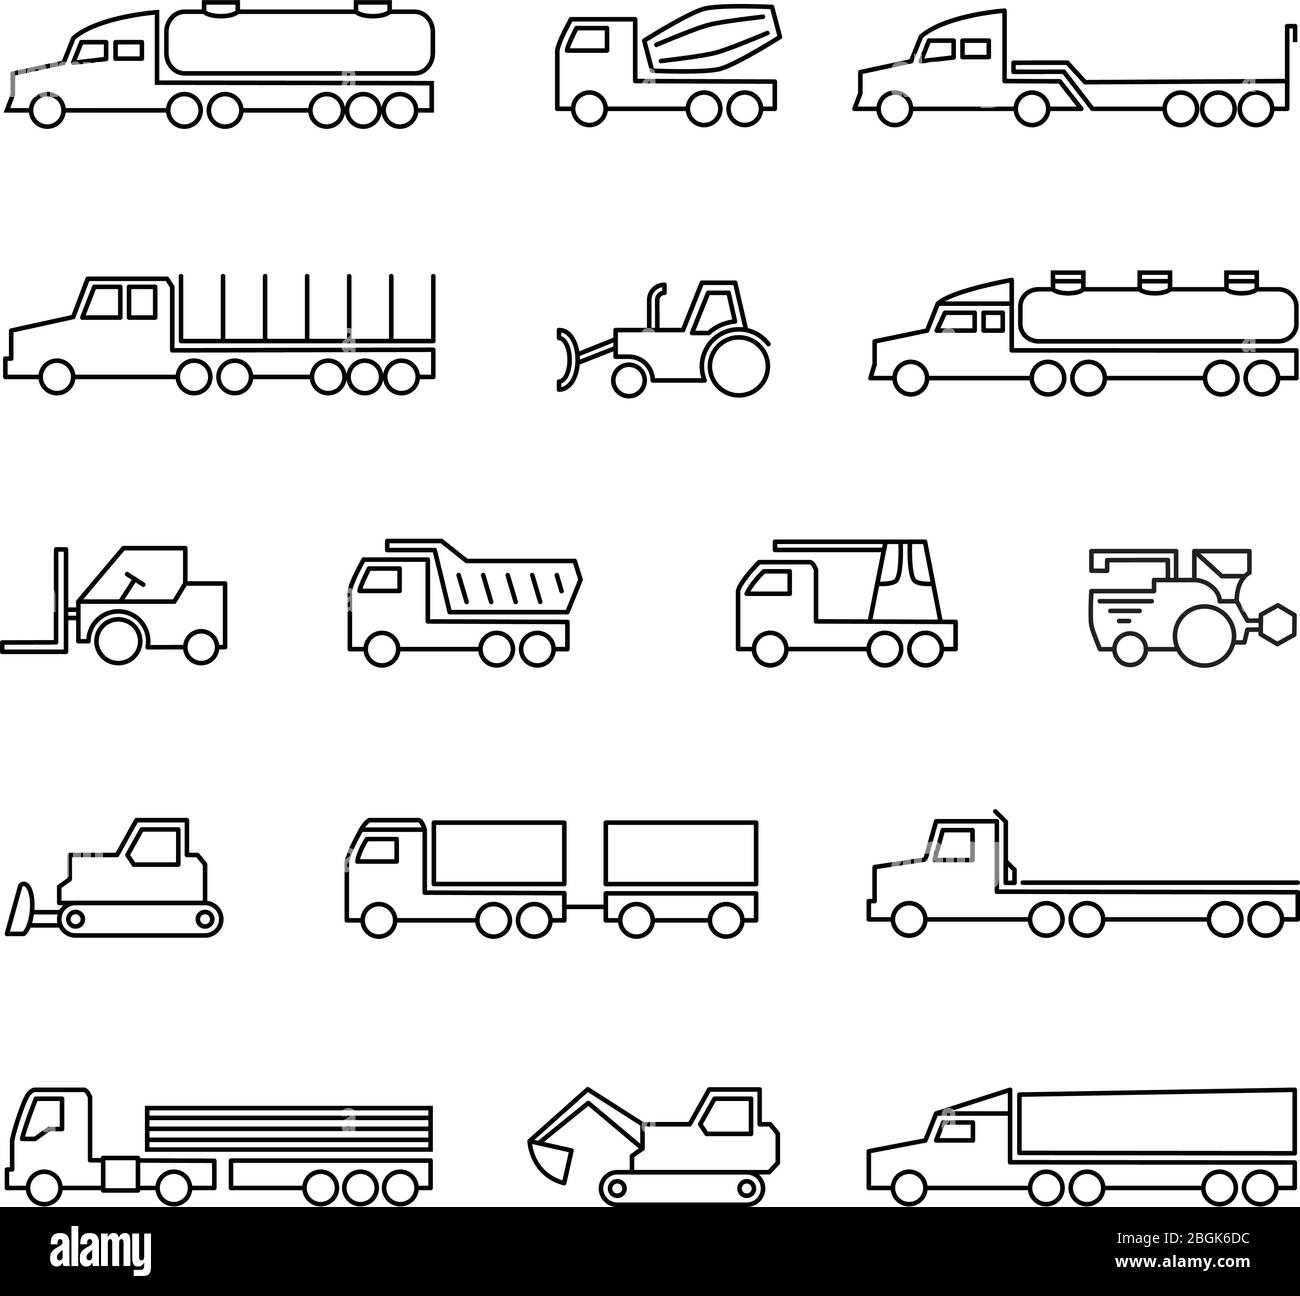 Macchine per l'edilizia. Icone delle linee di veicoli, trattori e attrezzature pesanti. Illustrazione del trattore per trasporto vettoriale, dell'apripista e del caricatore per macchine da trasporto Illustrazione Vettoriale